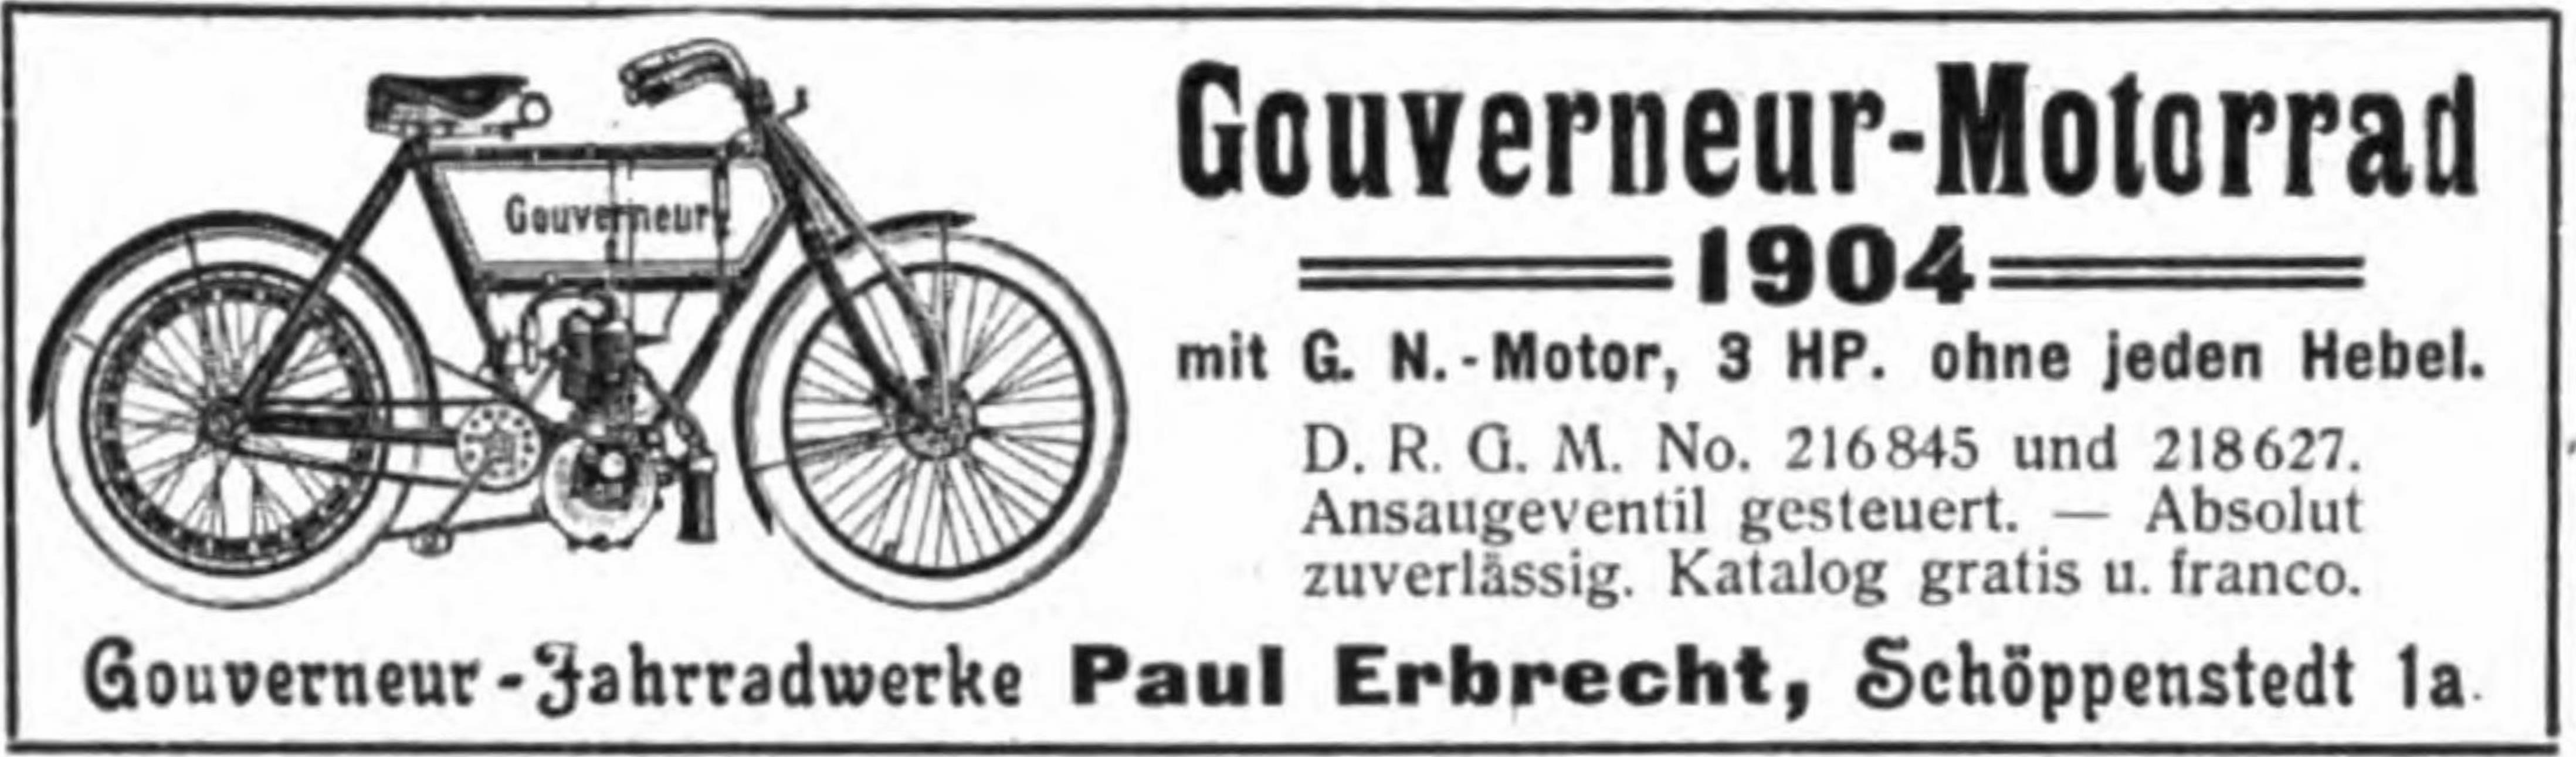 Gouverneuer 1904 71.jpg